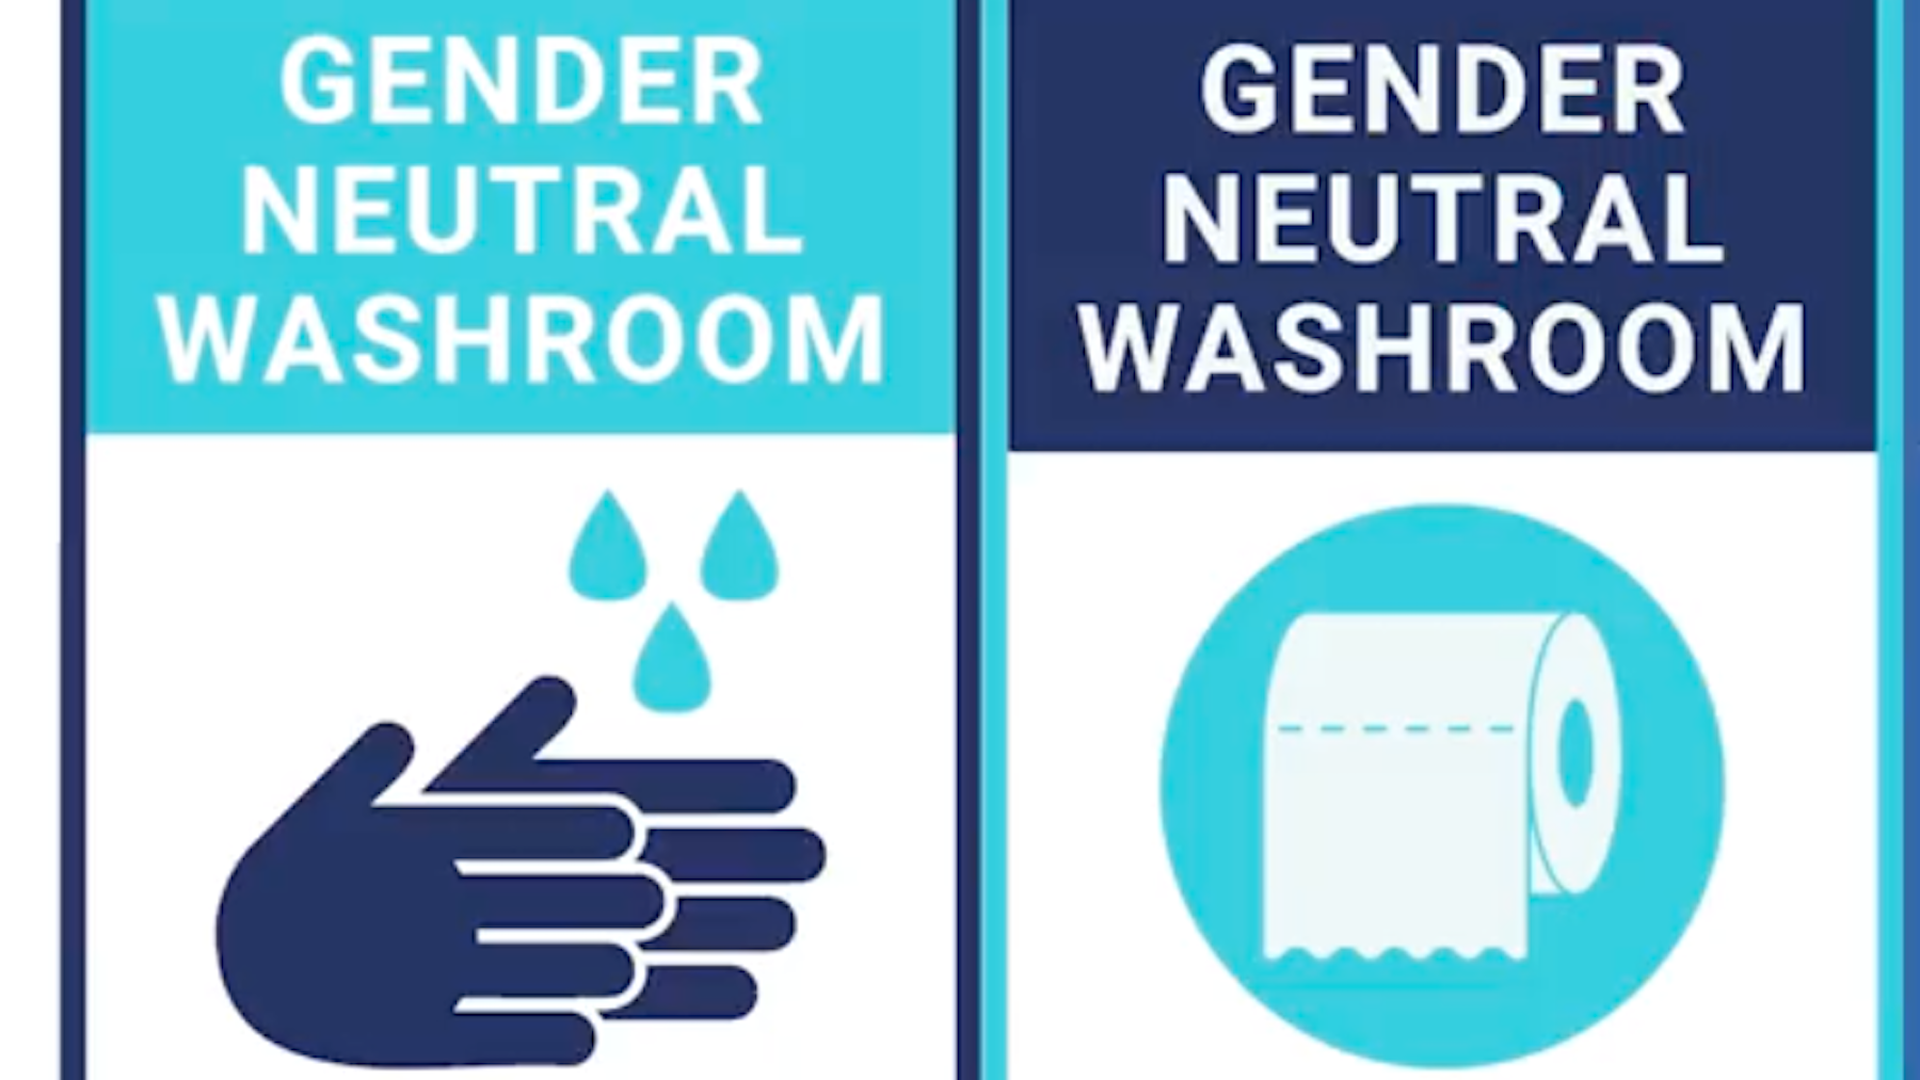 Gender neutral bathroom sign. 